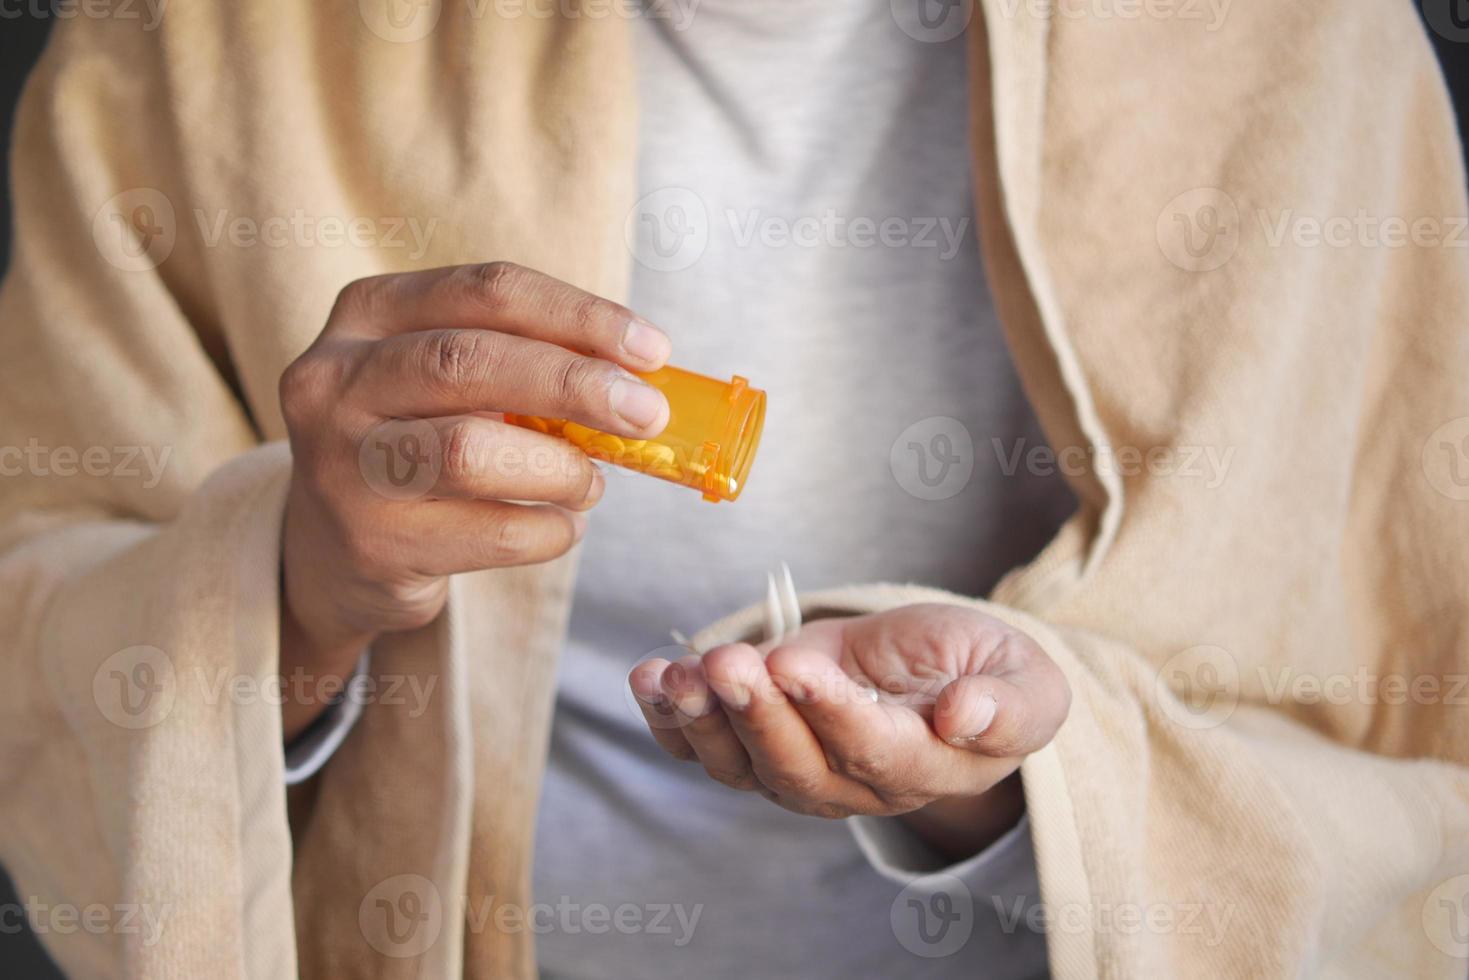 mans hand med medicin som spillts ut ur pillerbehållaren foto